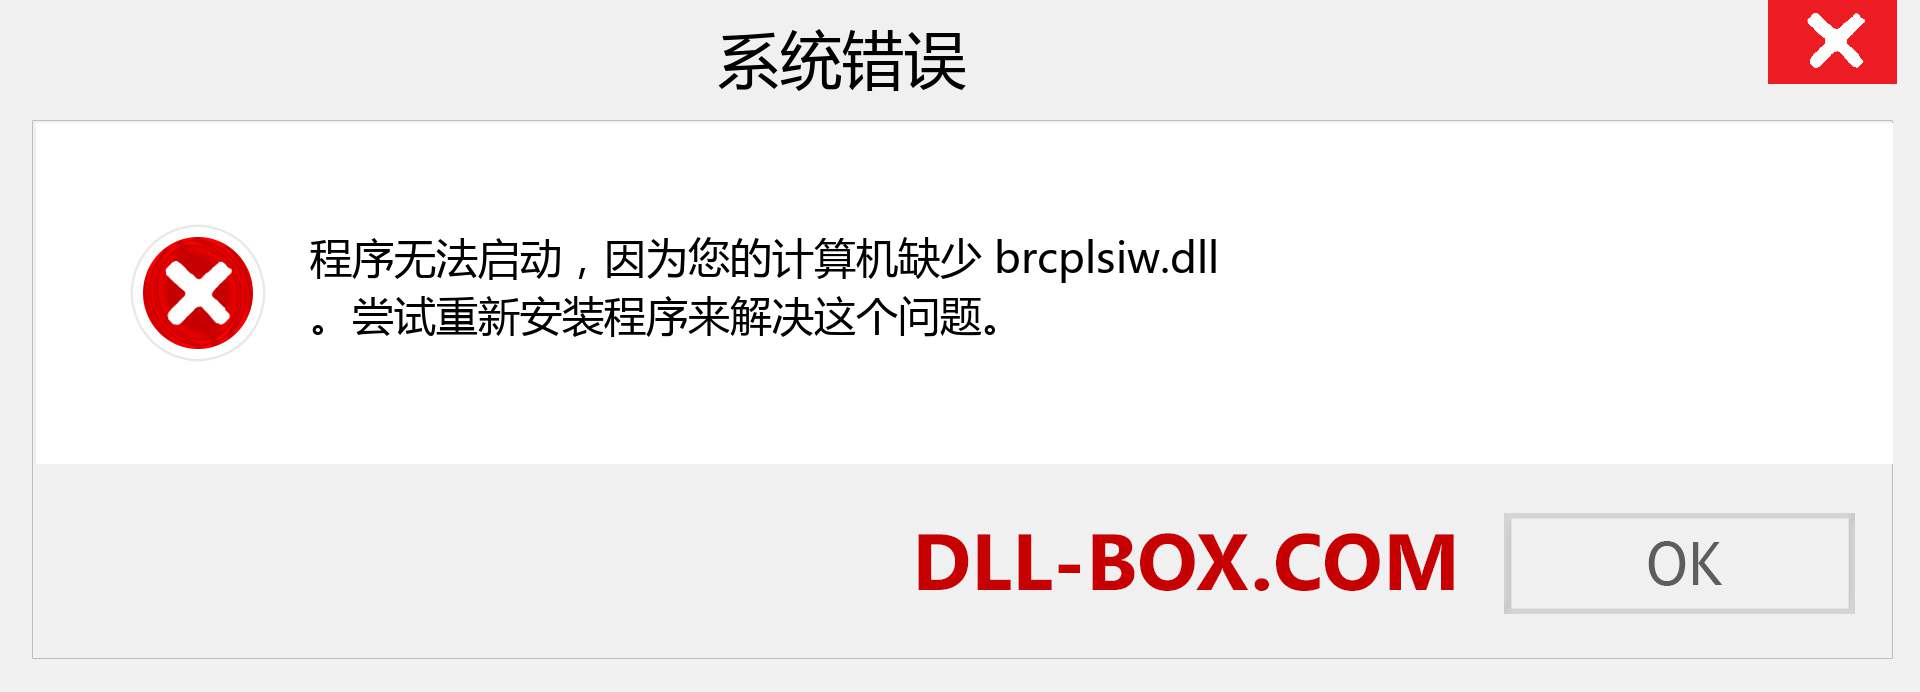 brcplsiw.dll 文件丢失？。 适用于 Windows 7、8、10 的下载 - 修复 Windows、照片、图像上的 brcplsiw dll 丢失错误